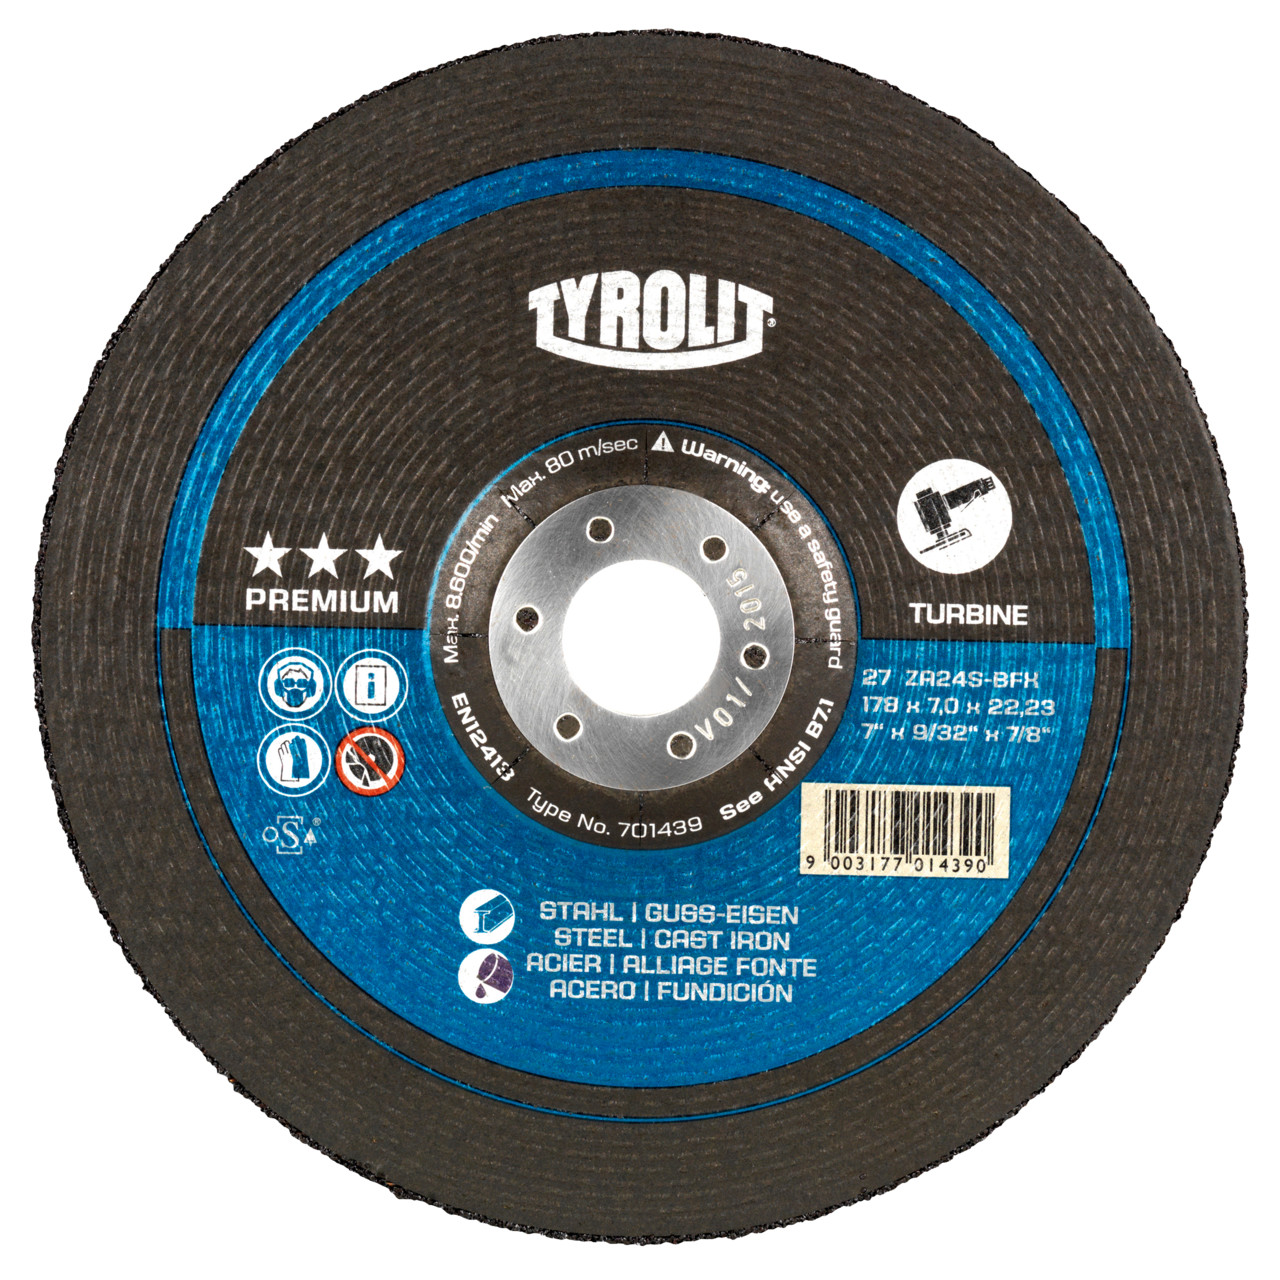 TYROLIT disco de desbaste DxUxH 178x7x22,23 T-GRIND para acero y fundición, forma: 27 - versión offset, Art. 701439